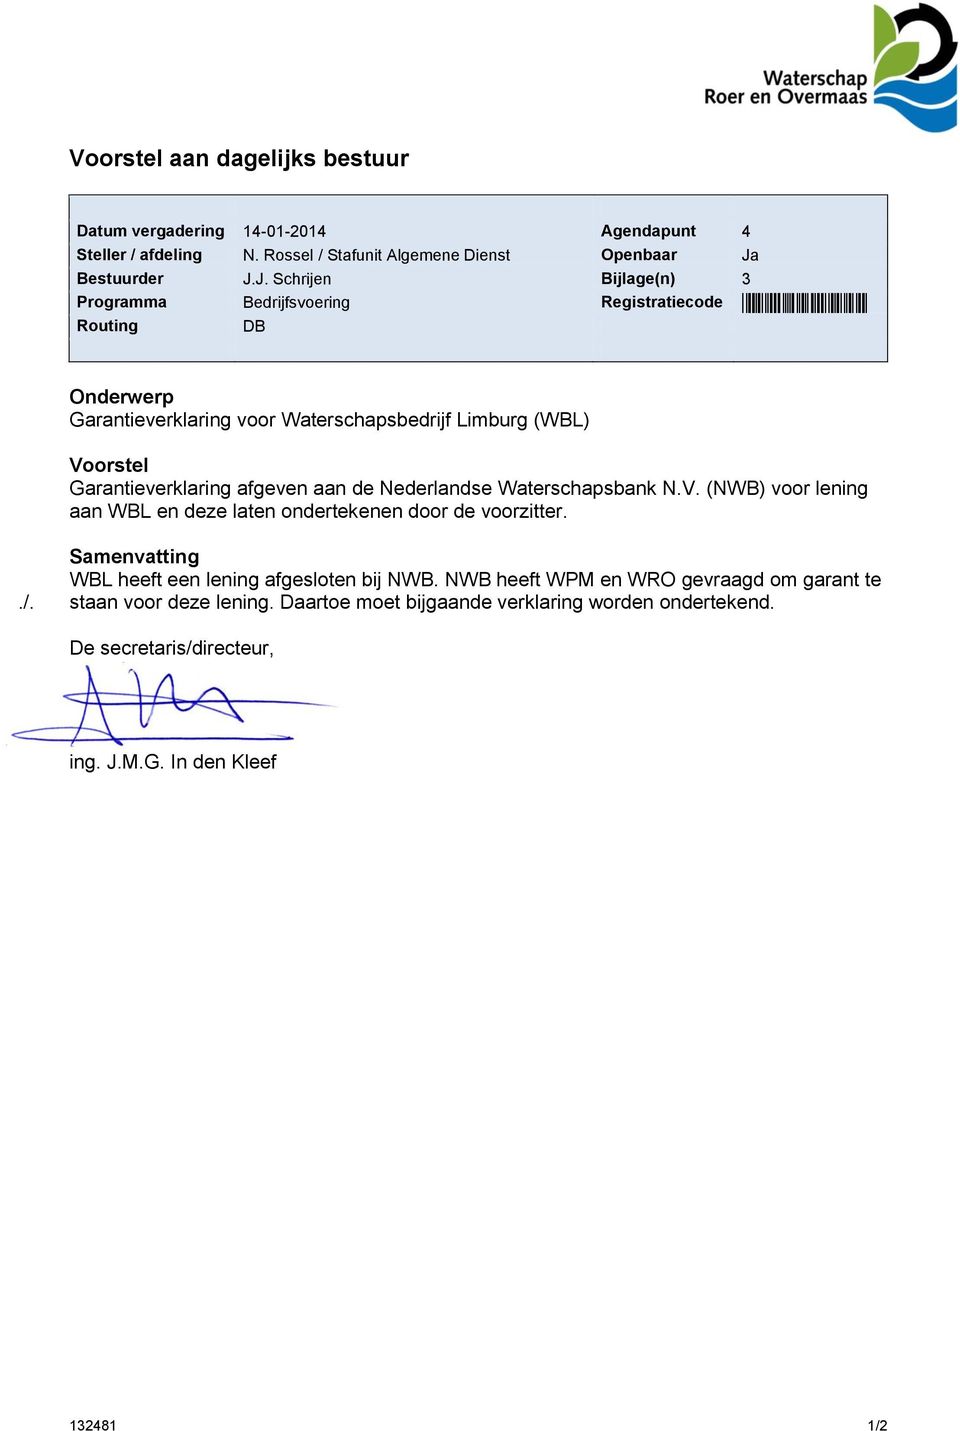 J. Schrijen Bijlage(n) 3 Programma Bedrijfsvoering Registratiecode *132481* Routing DB Onderwerp Garantieverklaring voor Waterschapsbedrijf Limburg (WBL) Voorstel